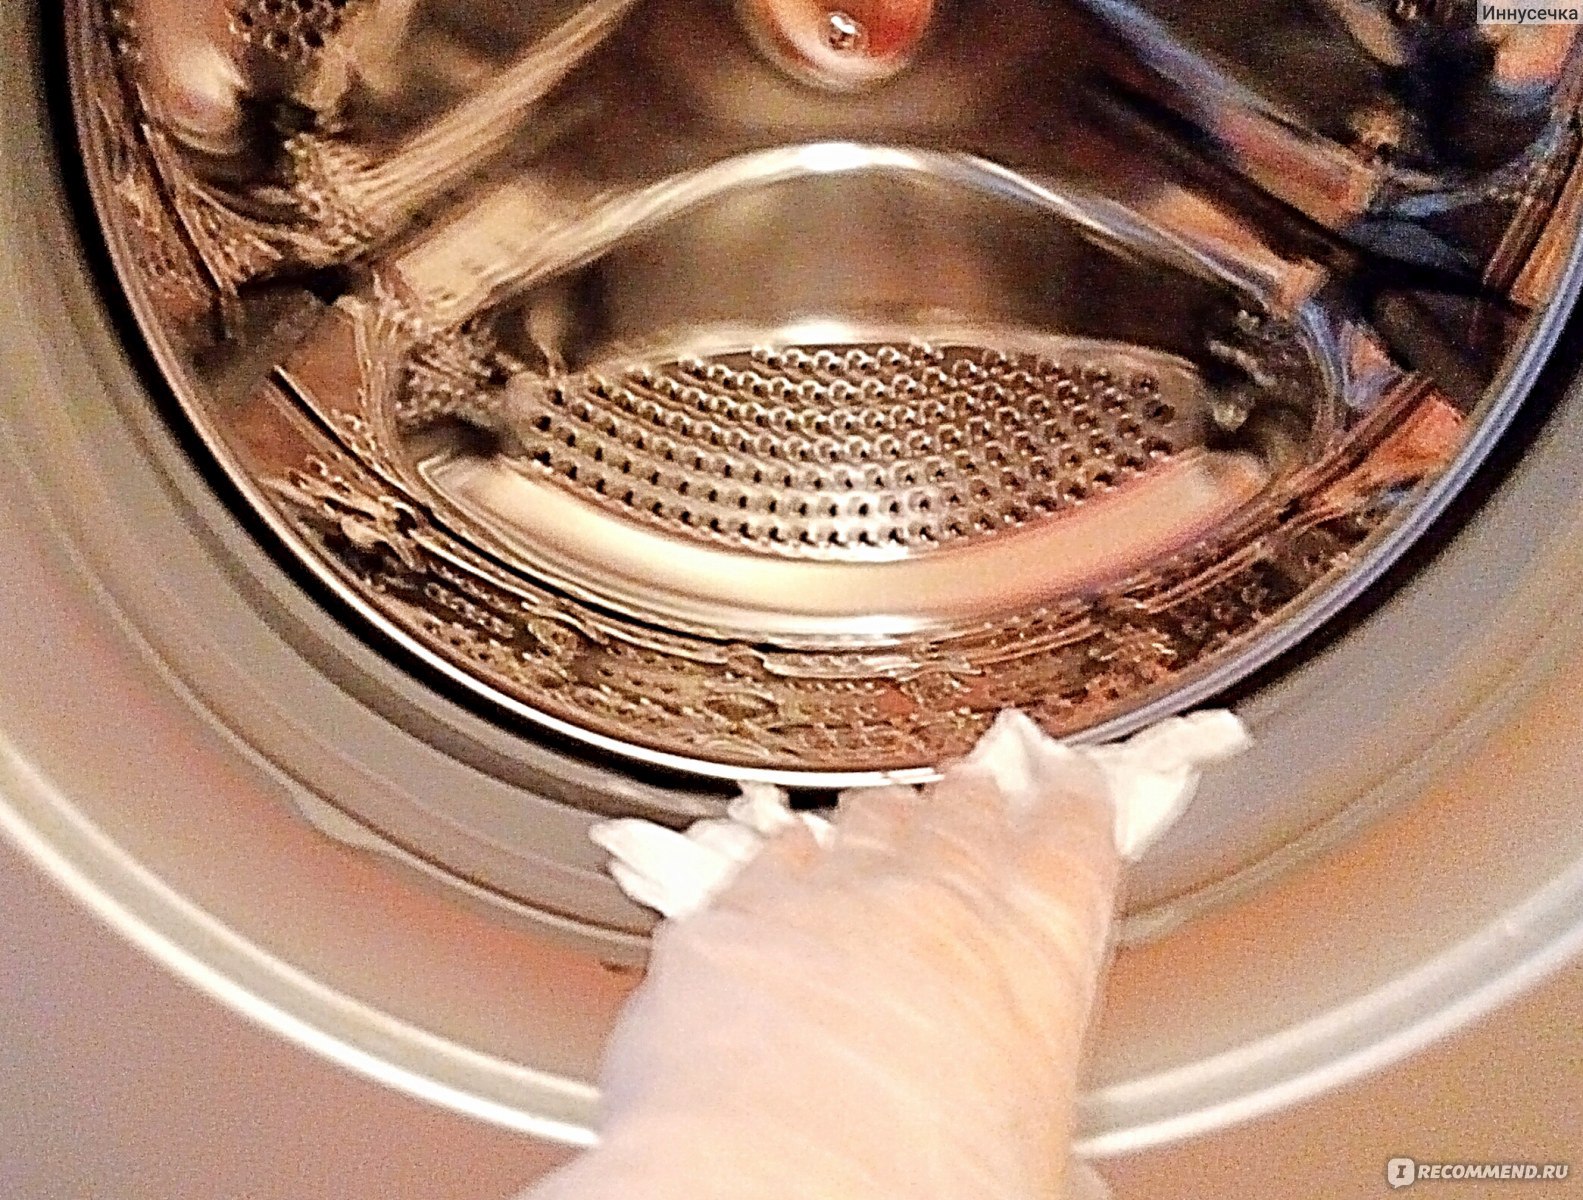 Пар в стиральной машине для чего нужен